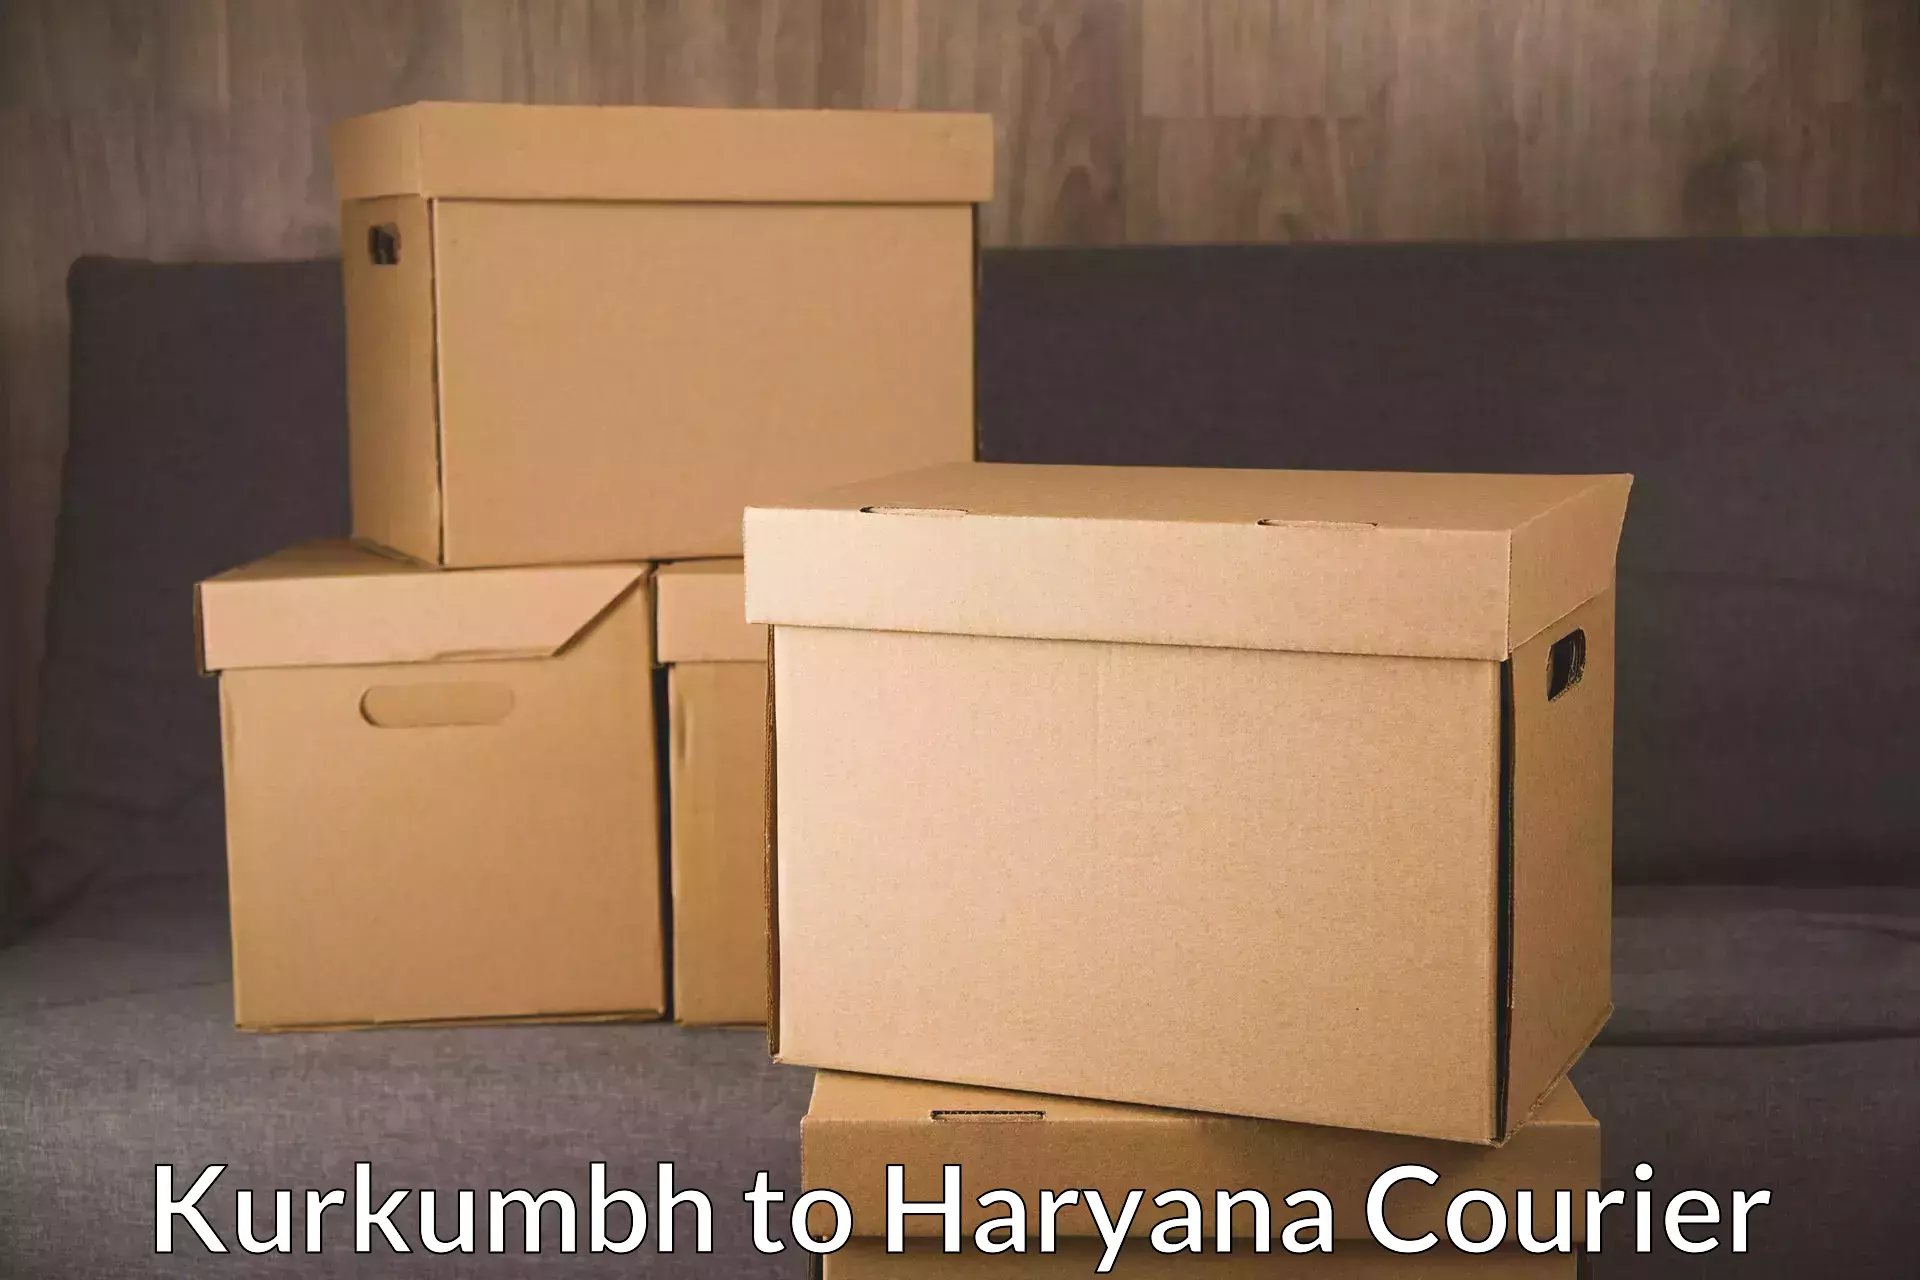 Package delivery network Kurkumbh to Kurukshetra